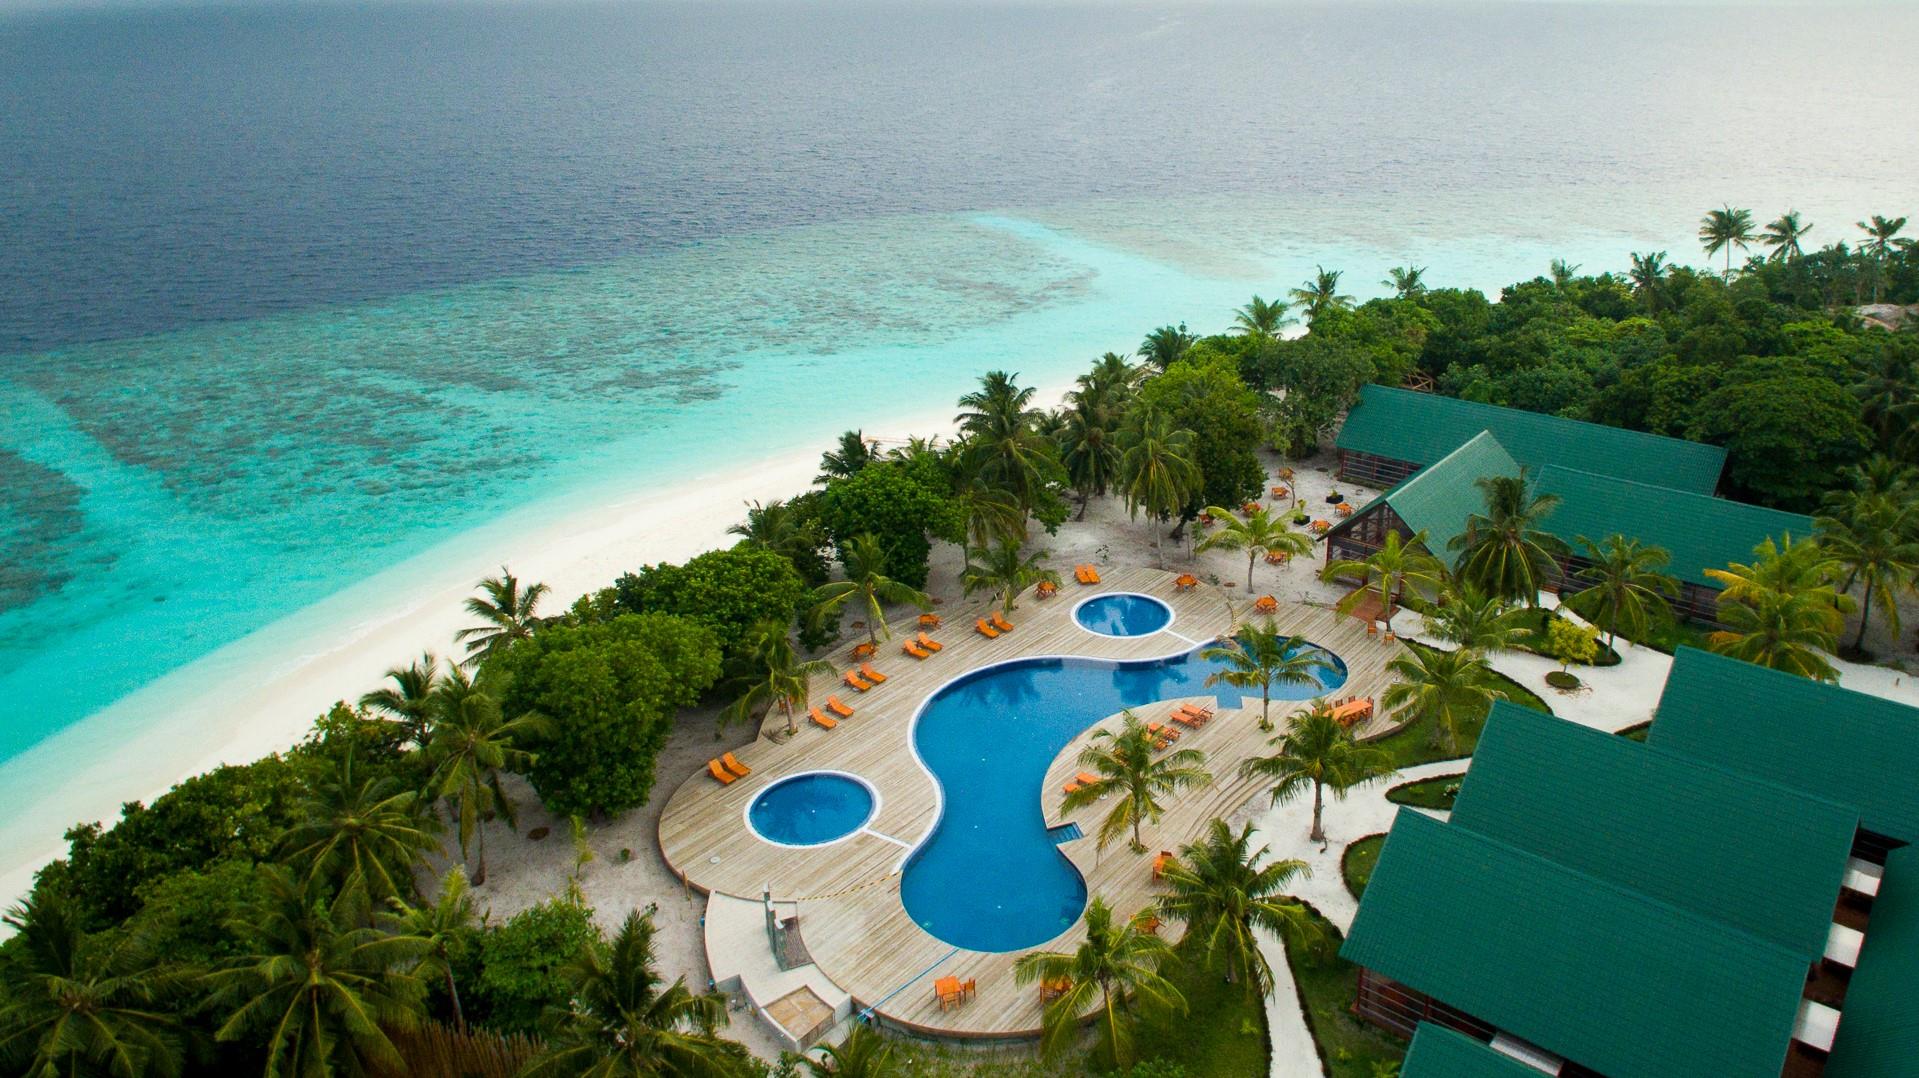 Фуравери мальдивы. Остров Фуравери Мальдивы. Мальдивы Furaveri Island Resort. Furaveri Maldives 5. Furaveri Island Resort & Spa Maldives 5*.